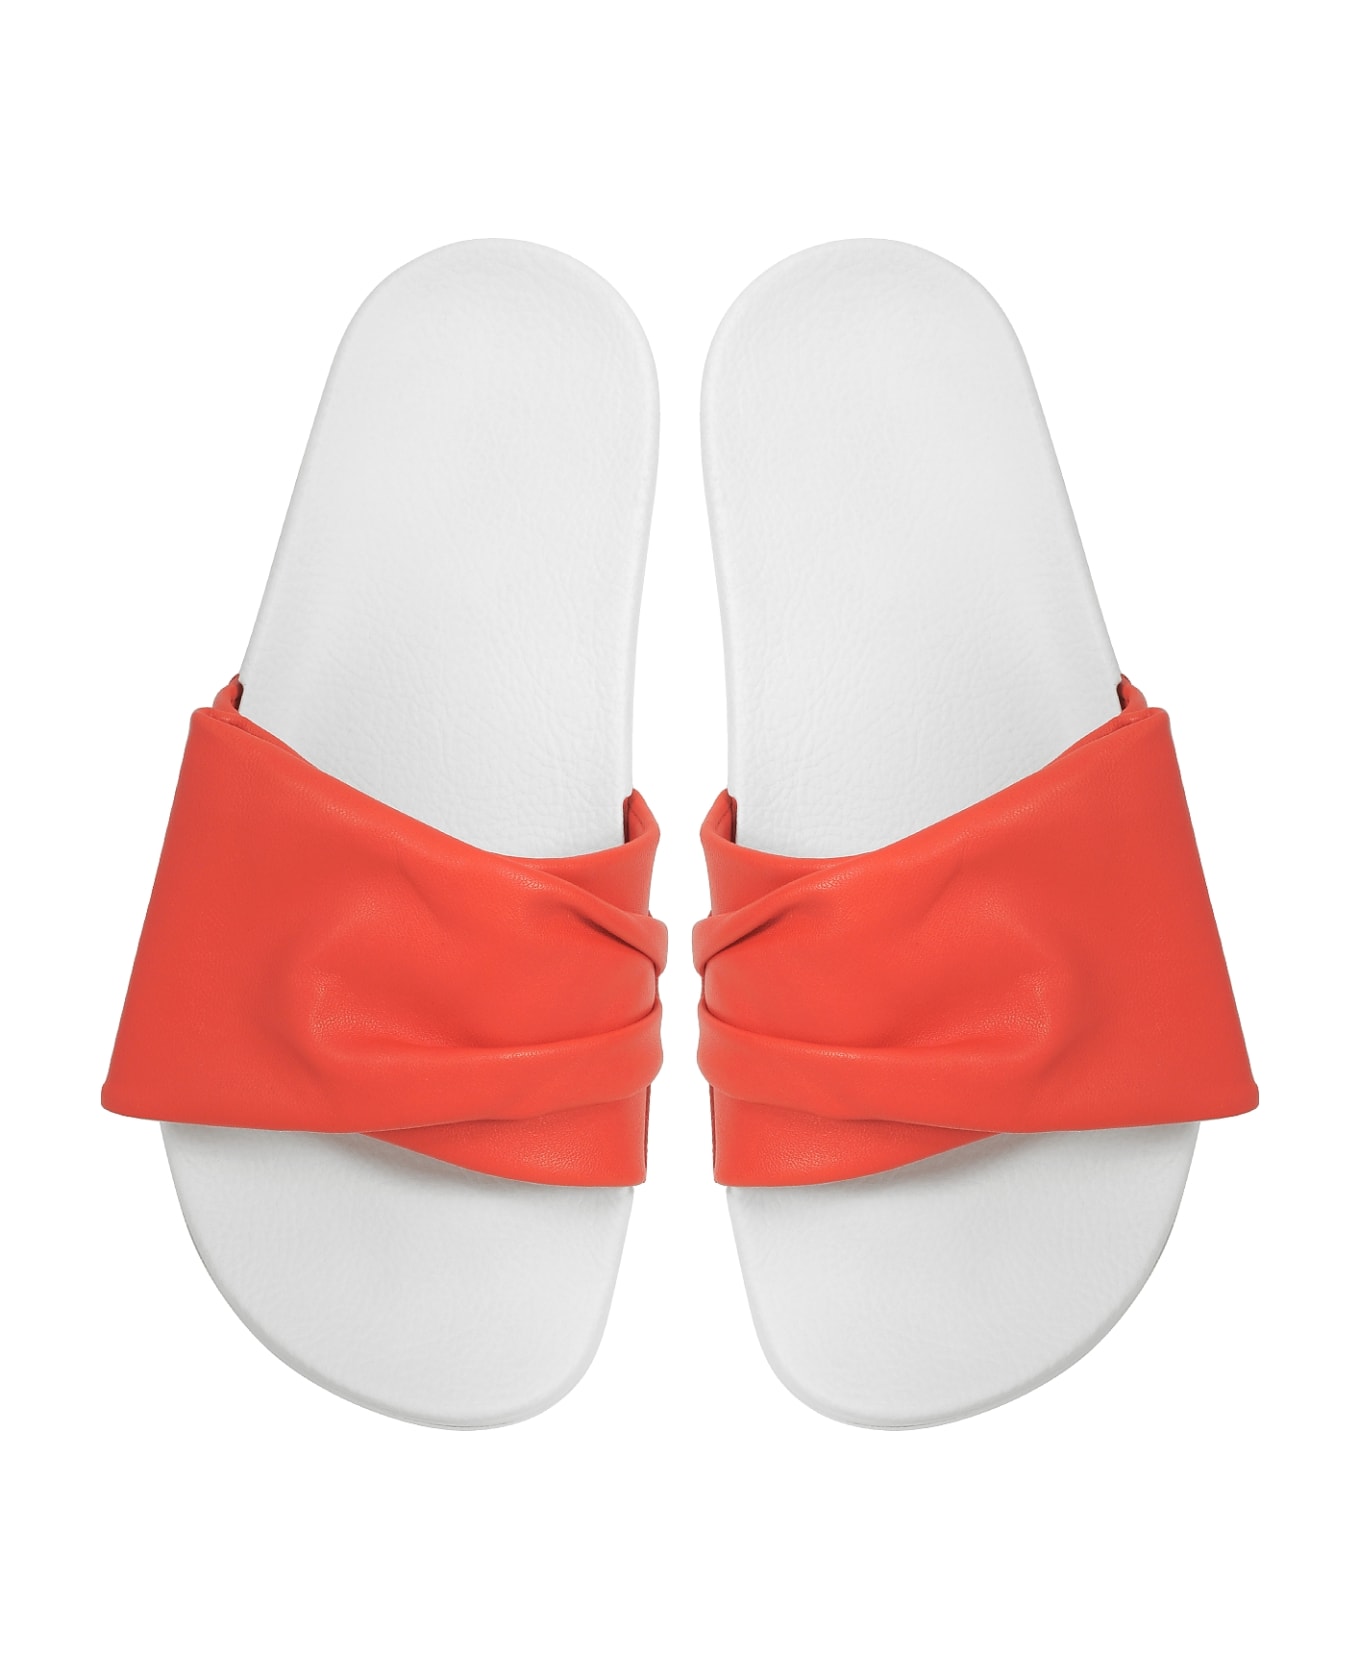 Clergerie Wendy Blood Orange Leather Slide Sandals W/white Sole - Orange